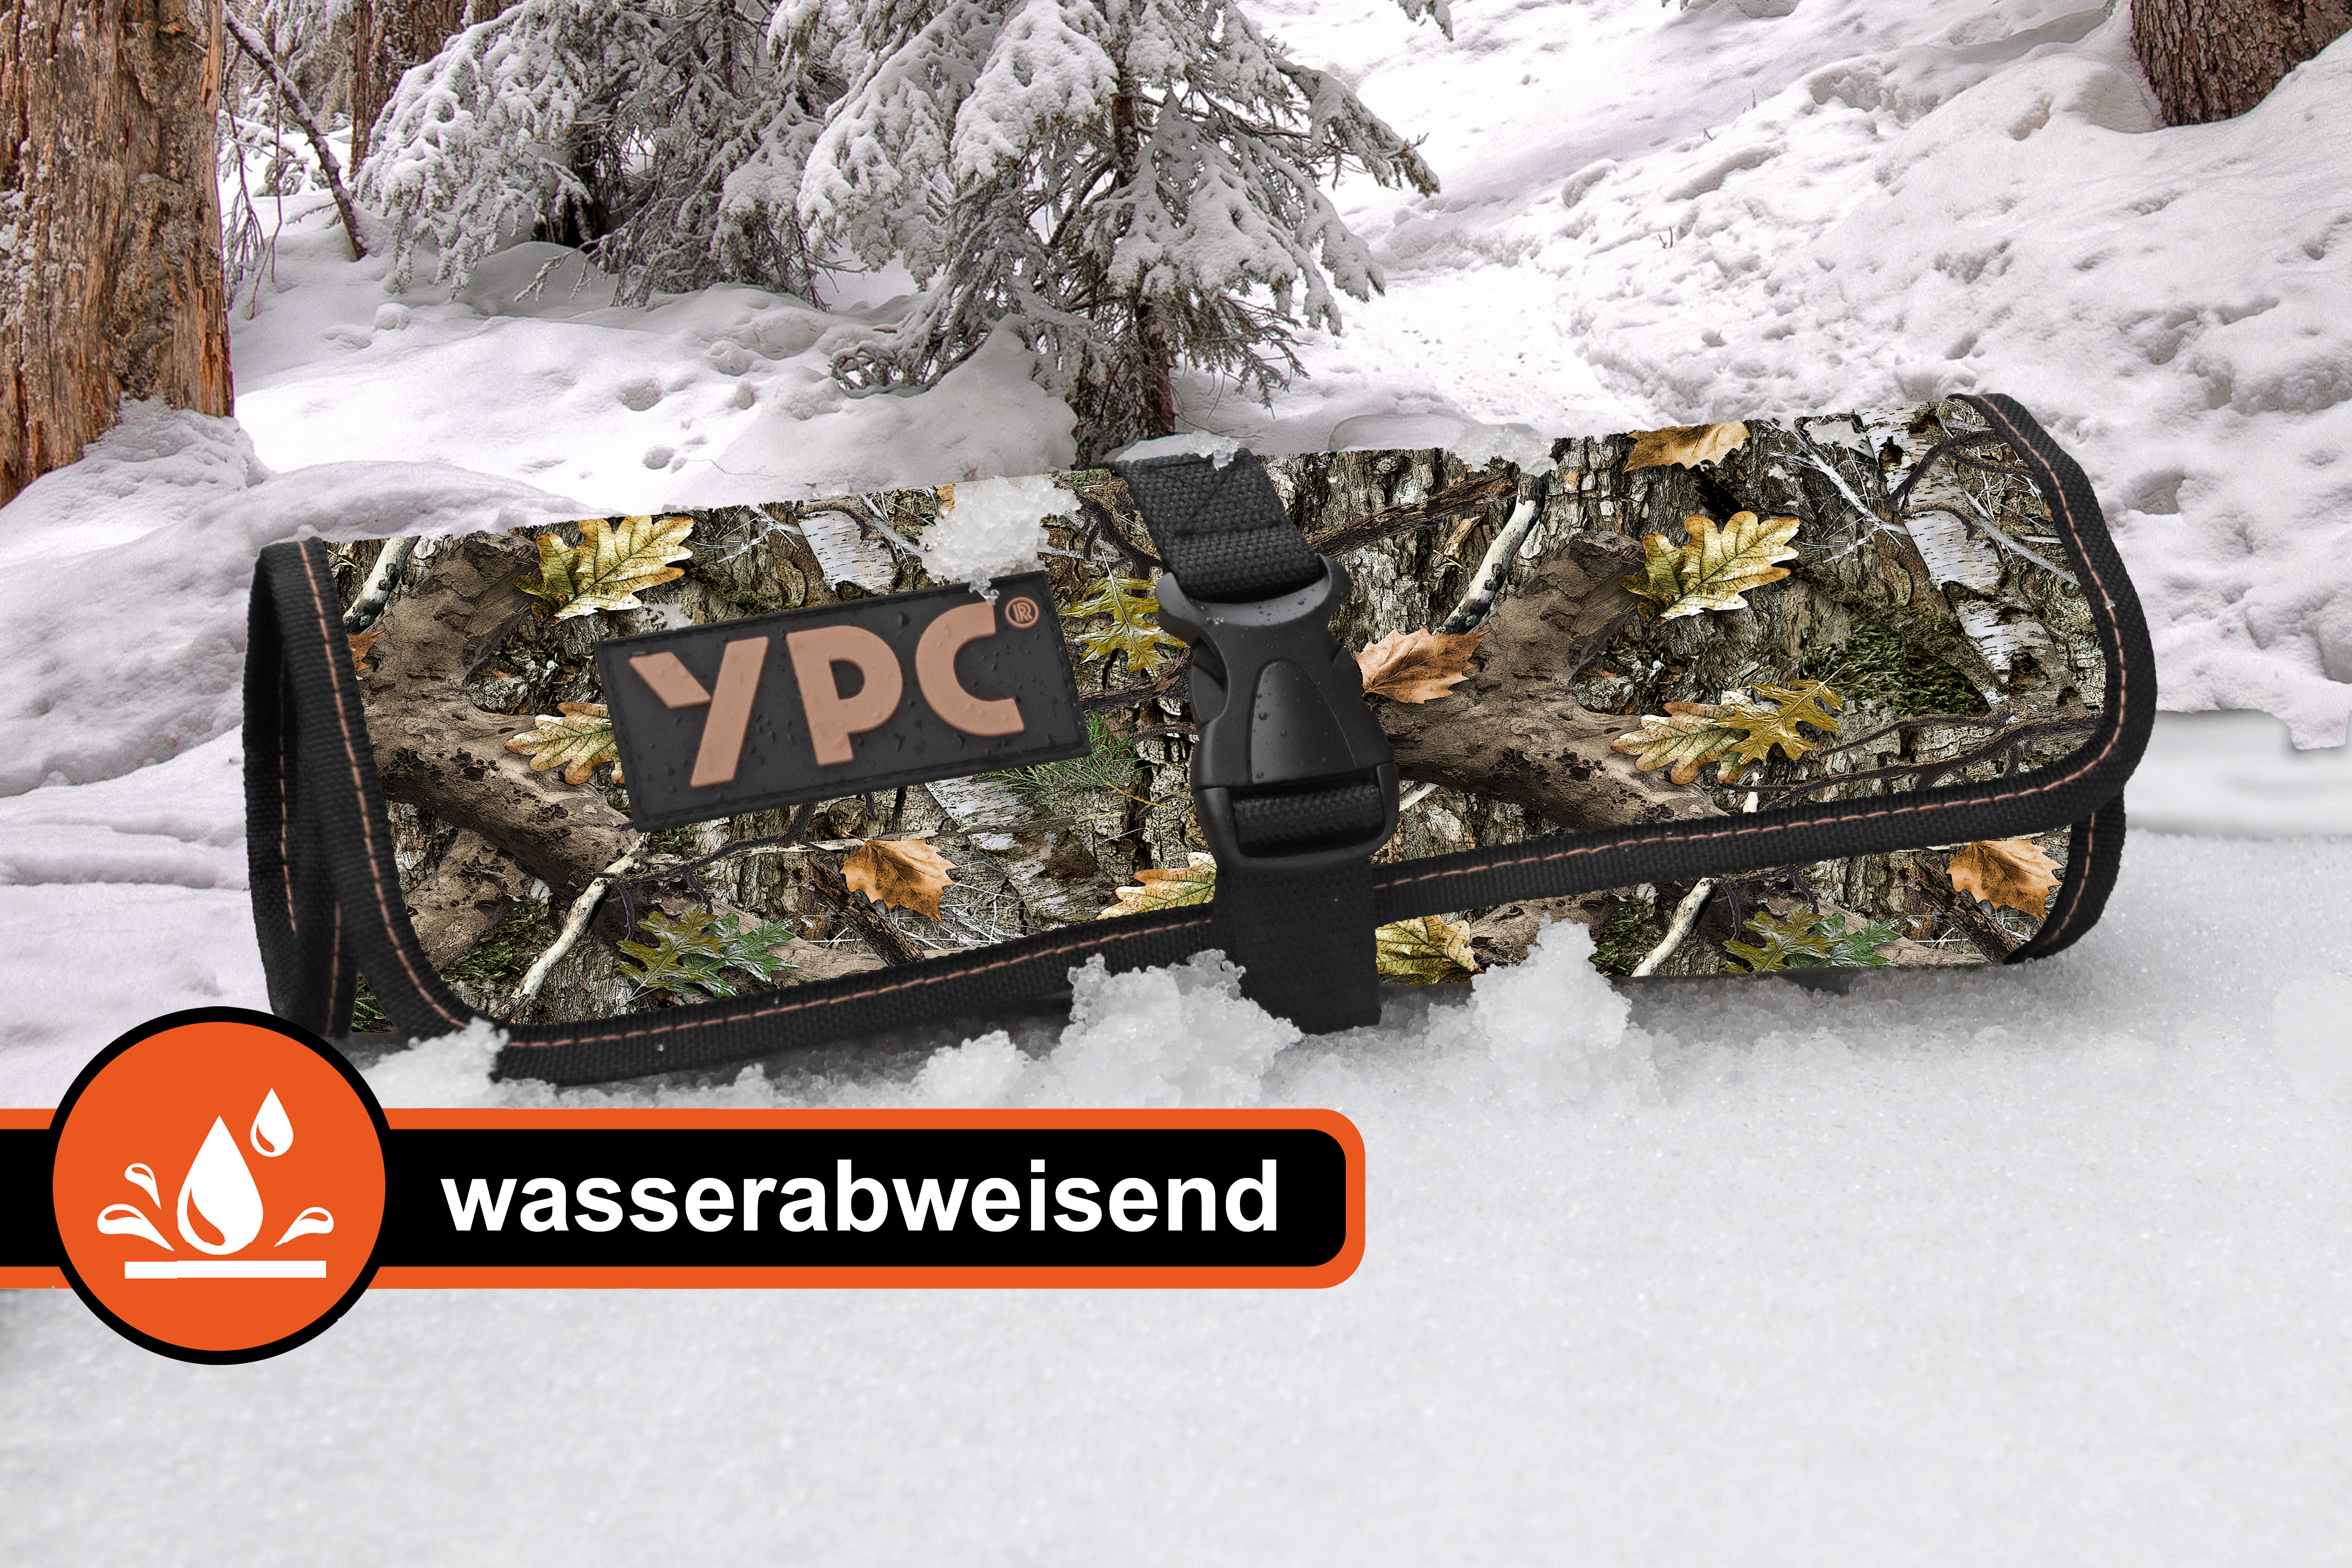 "VarioRoll L" Werkzeug Rolltasche 45x32cm, 10 Steckfächer und 4 Halteschlaufen, Camouflage-Schwarz